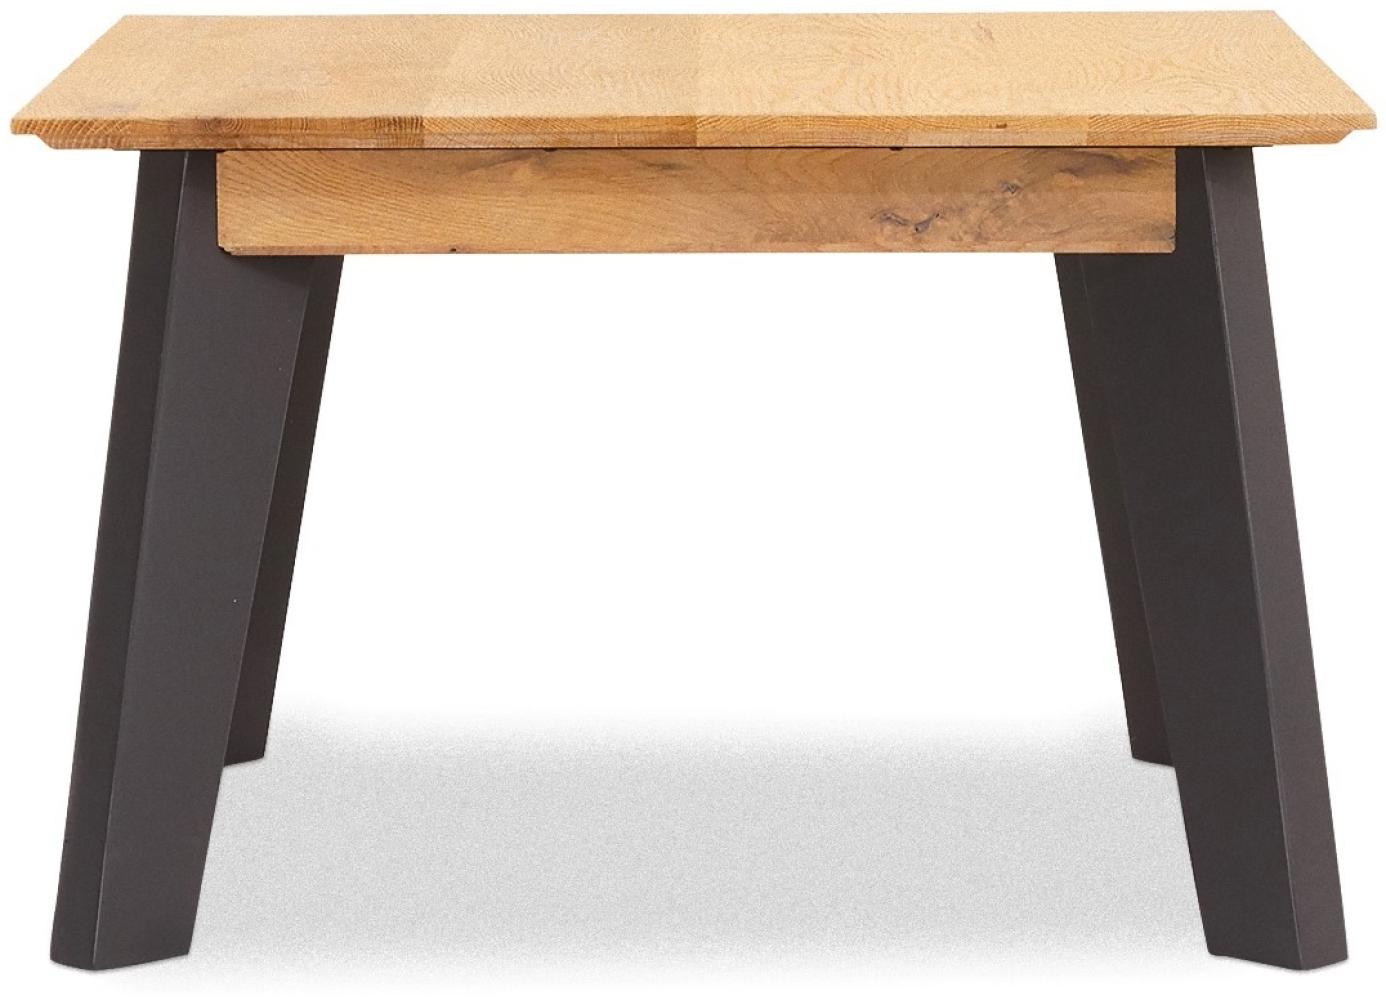 Seth Couchtisch 70 cm Eiche grau Wohnzimmer Beistelltisch Tisch Sofatisch Holz Bild 1